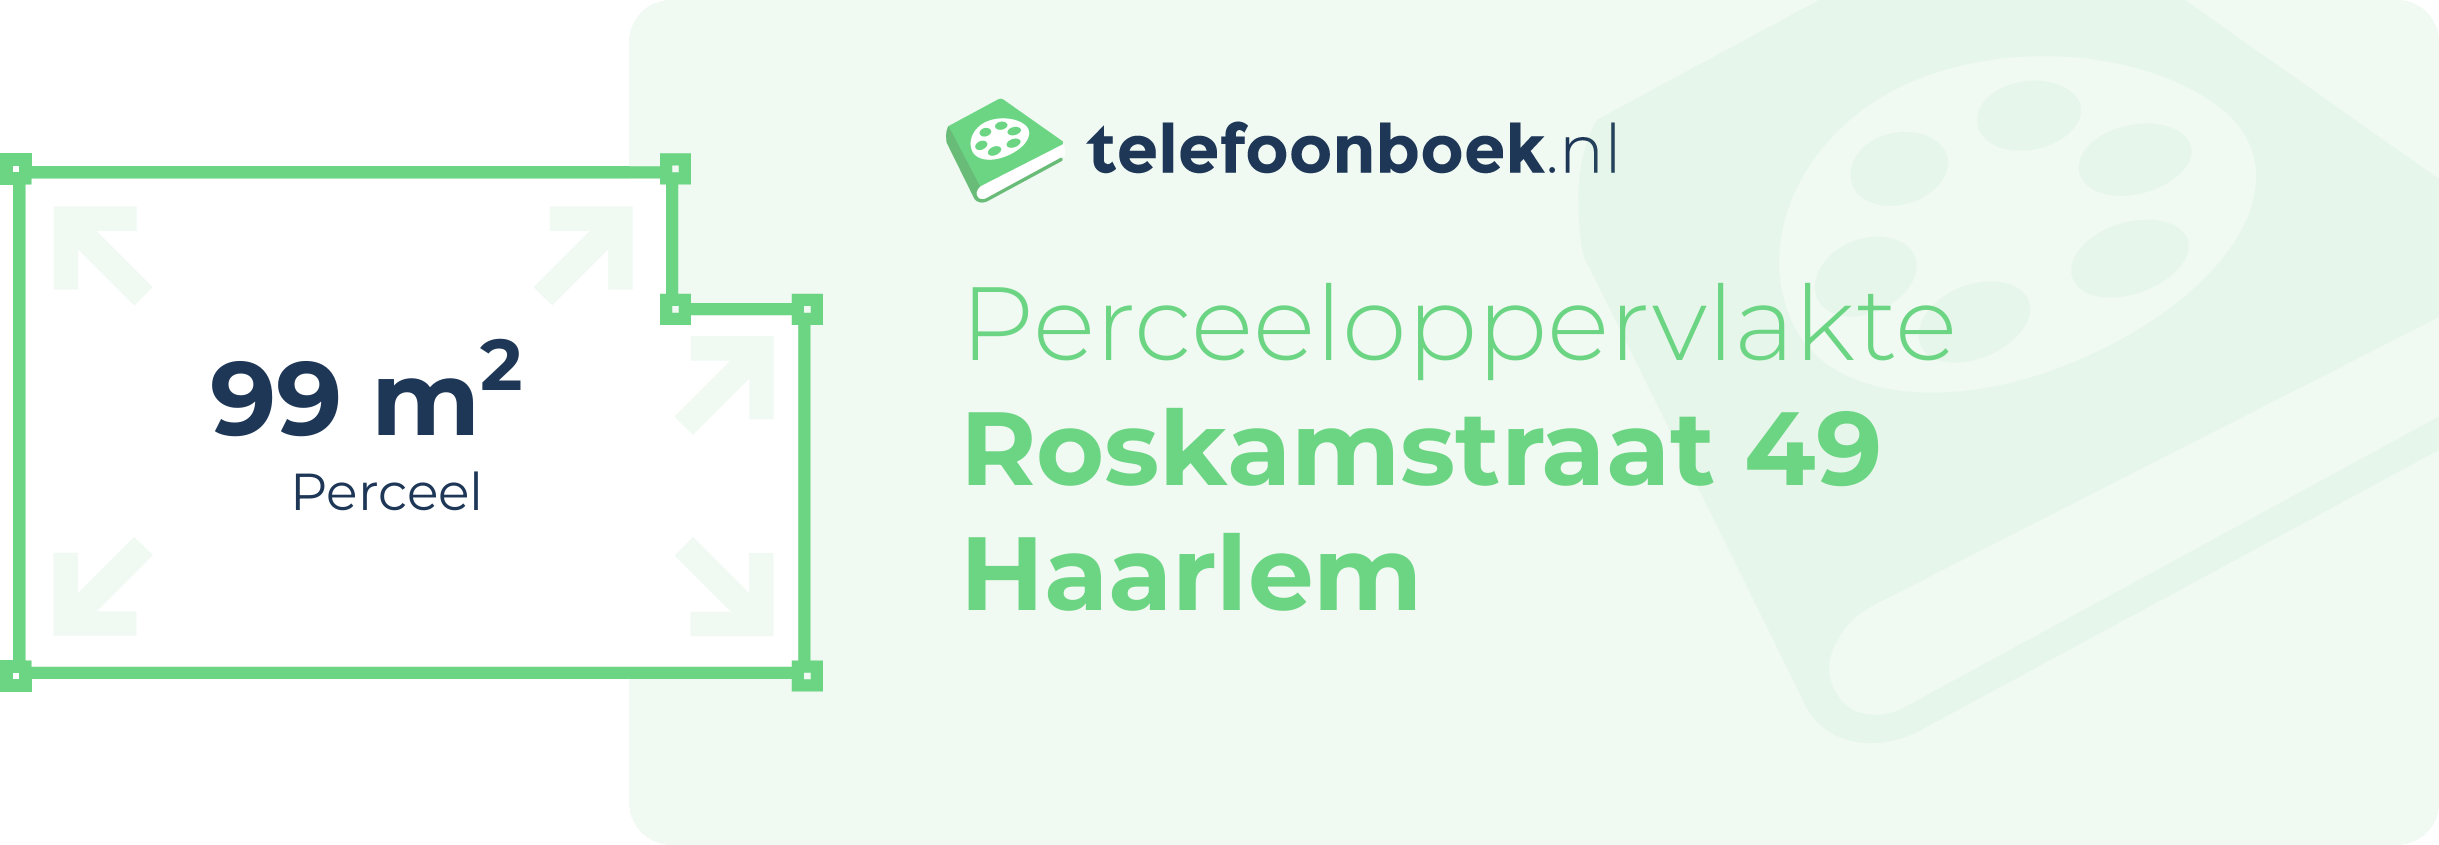 Perceeloppervlakte Roskamstraat 49 Haarlem